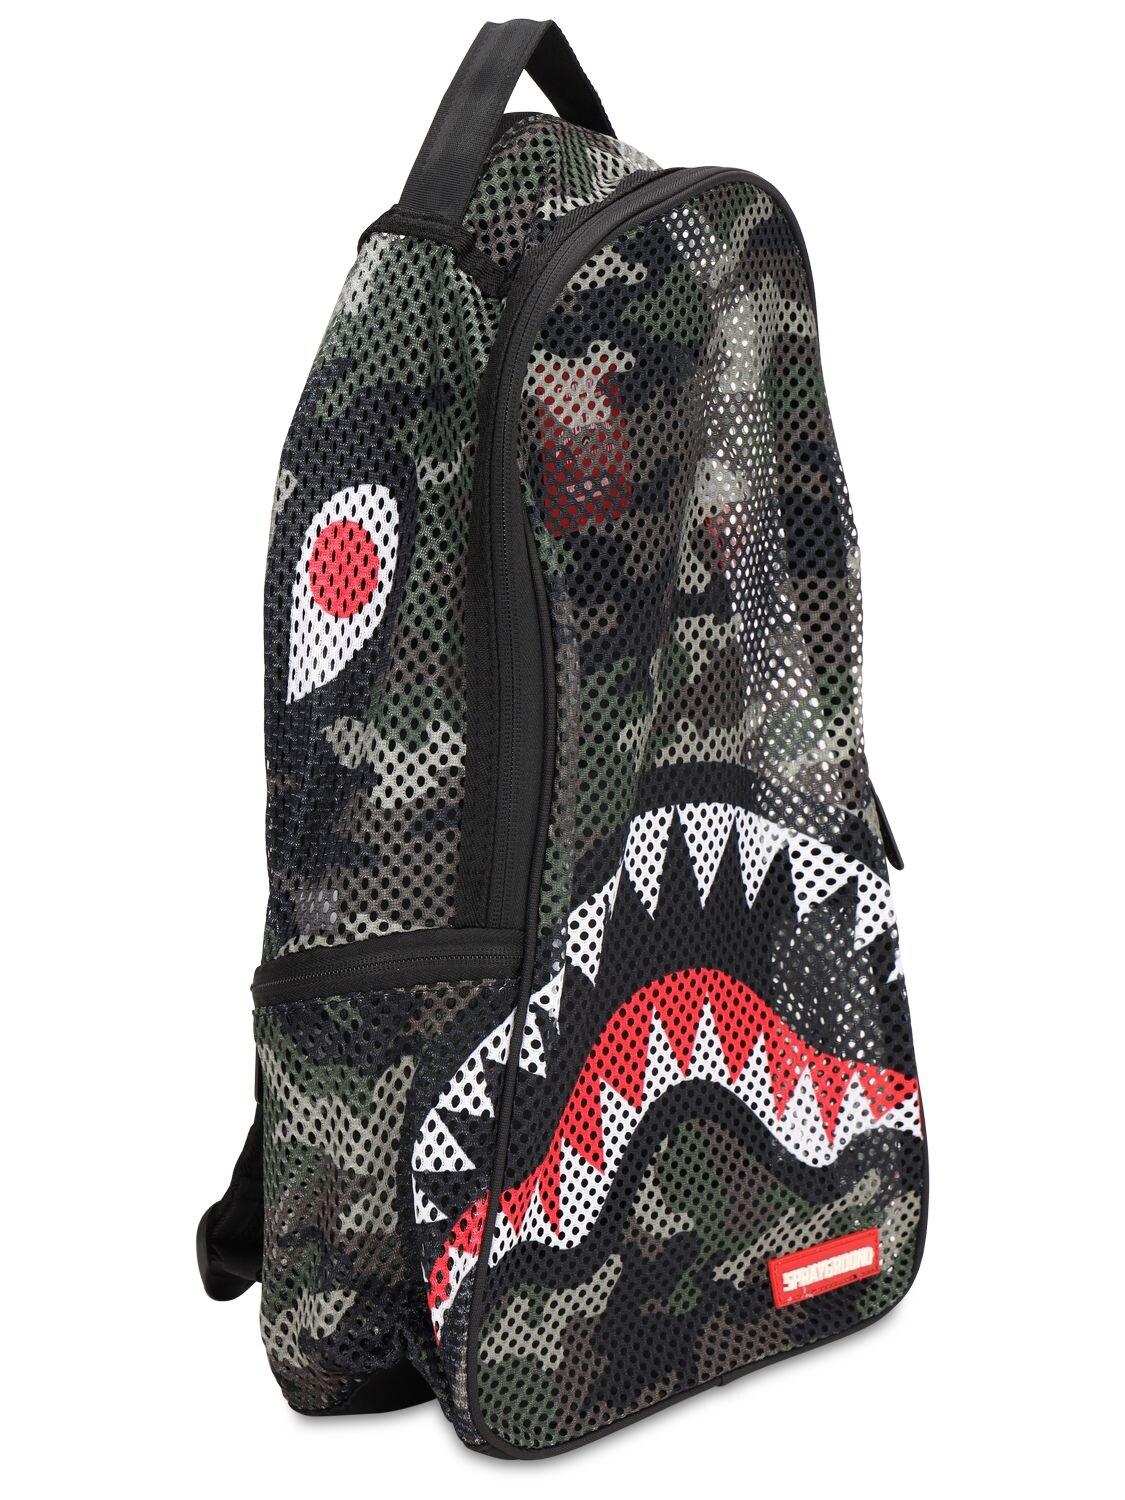 Sprayground Shark Camo Mesh Backpack, Zumiez